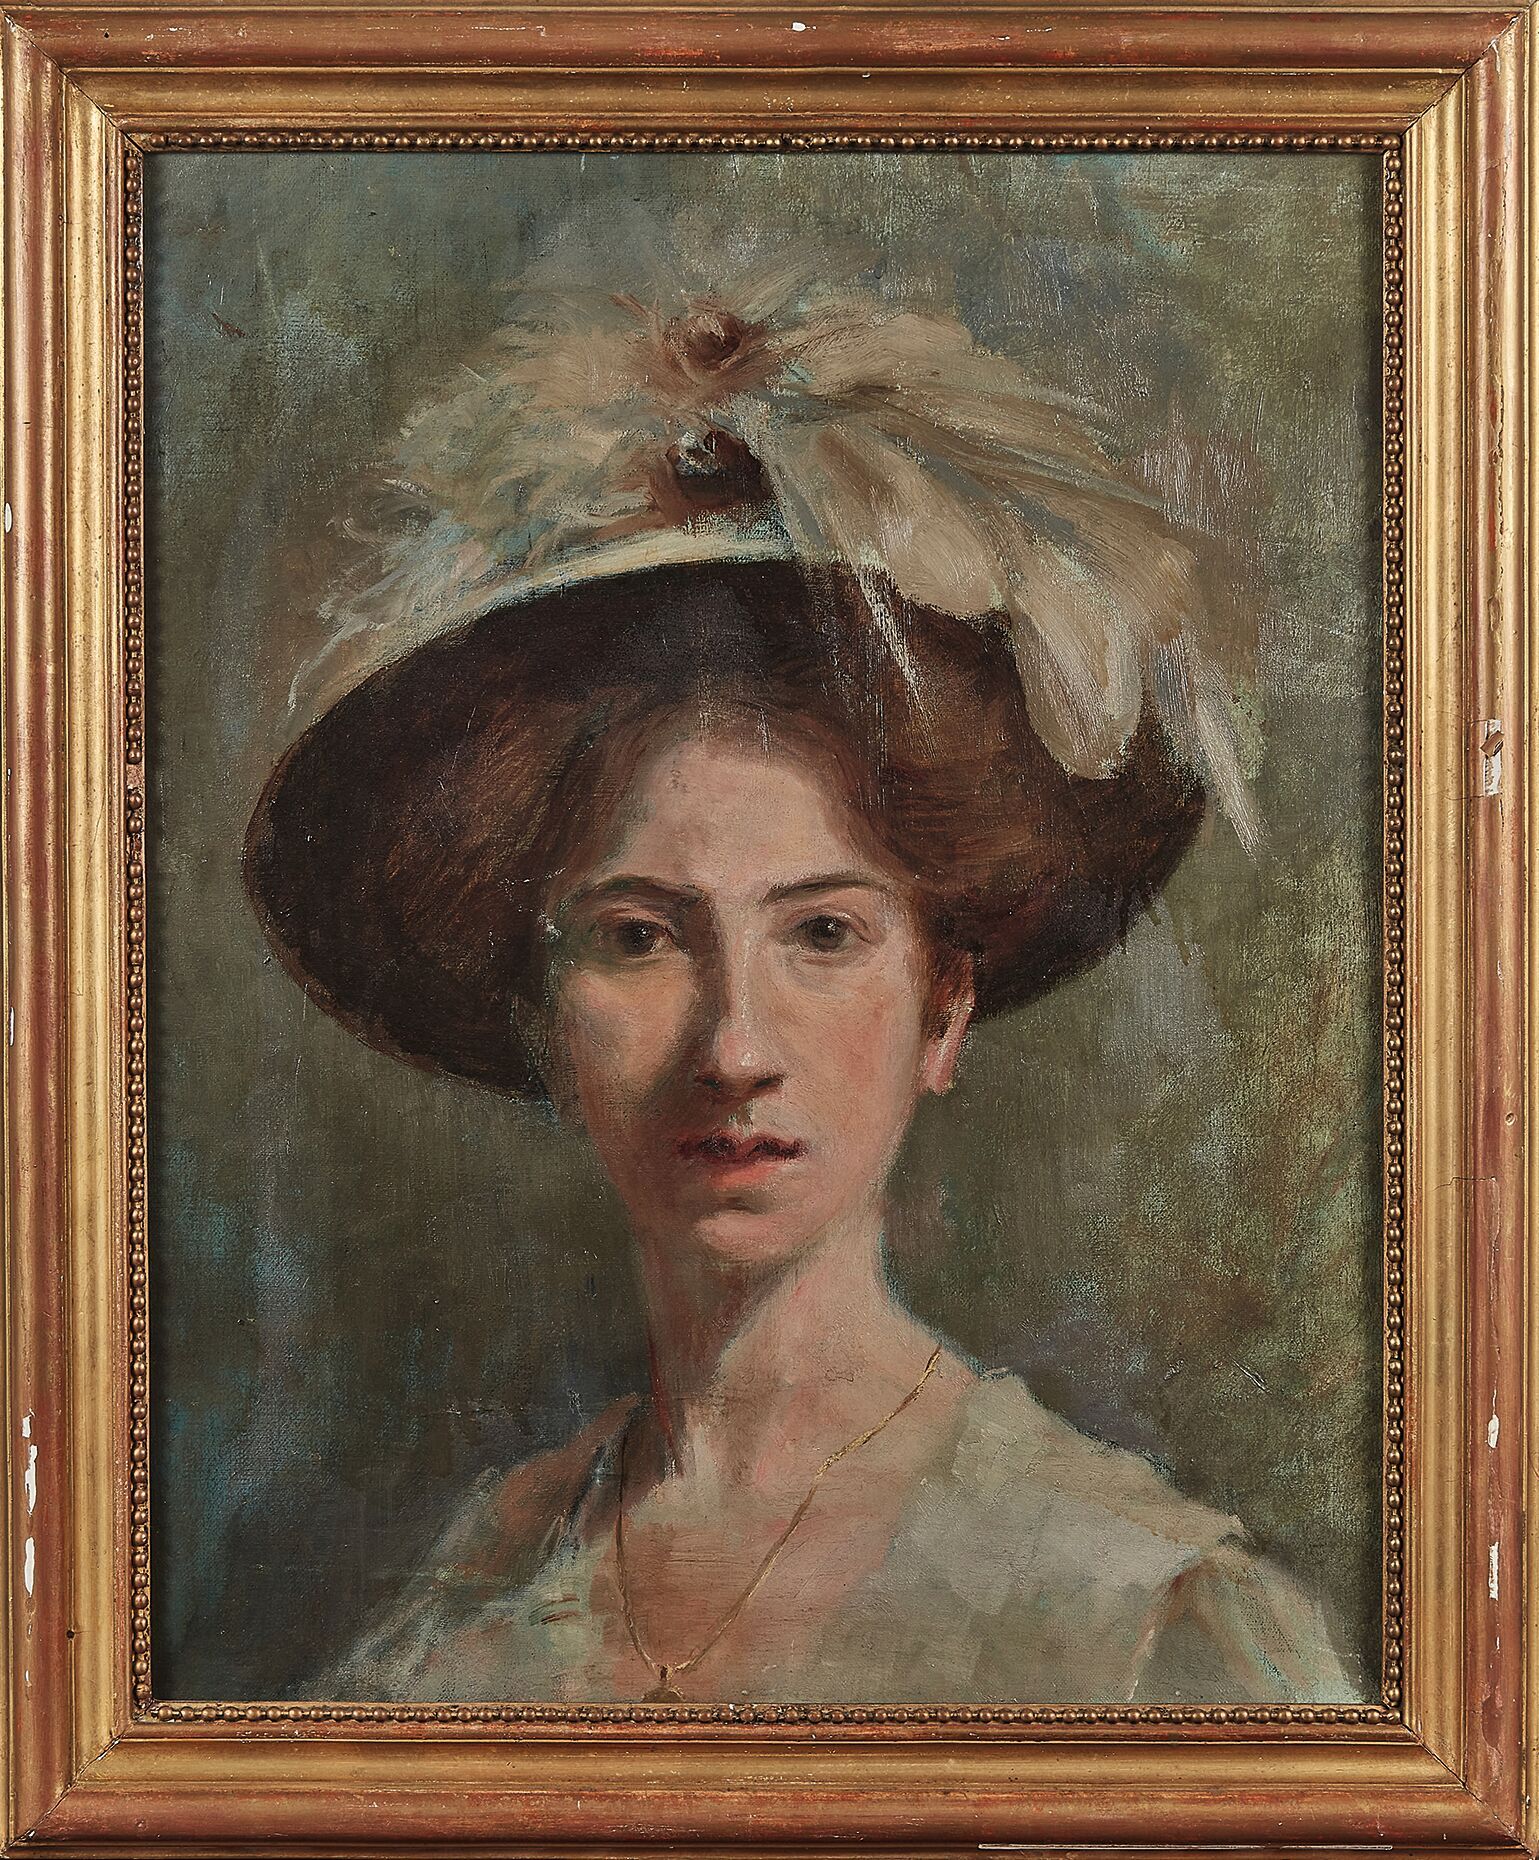 Null MODERNE SCHULE
Porträt einer Frau mit Hut
Öl auf Leinwand.
55 x 46 cm